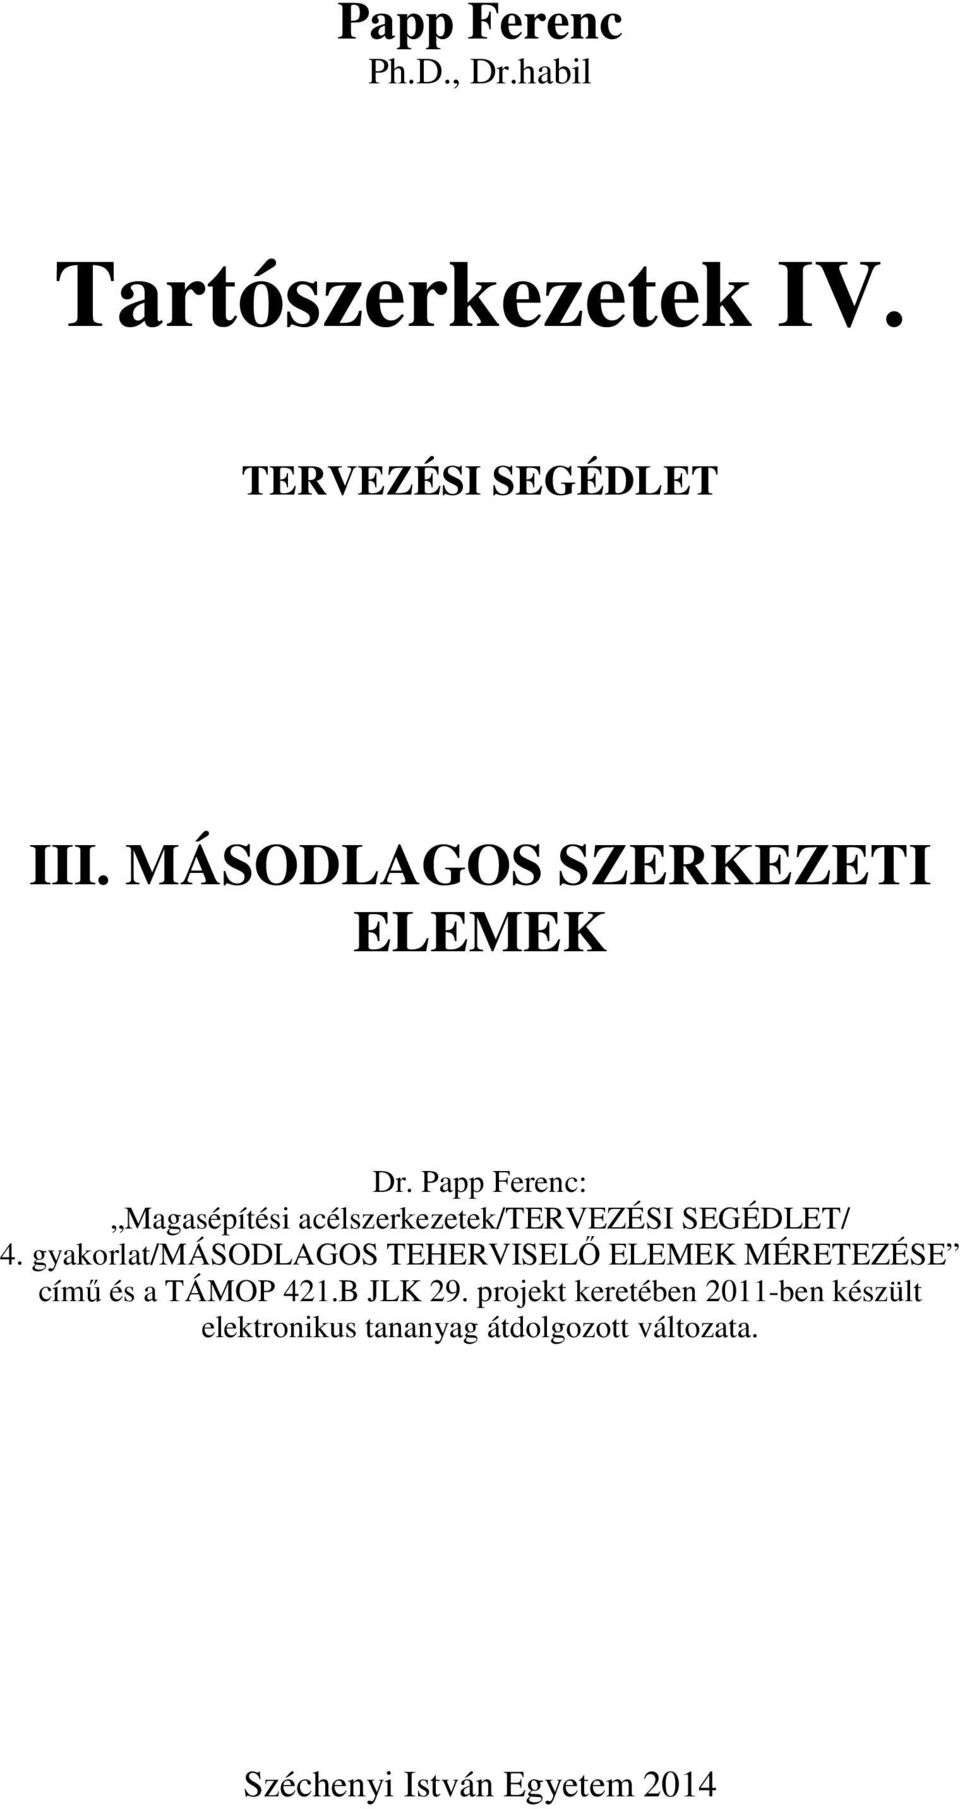 Papp Ferenc: Magasépítési acélszerkezetek/tervezési SEGÉDLET/ 4.